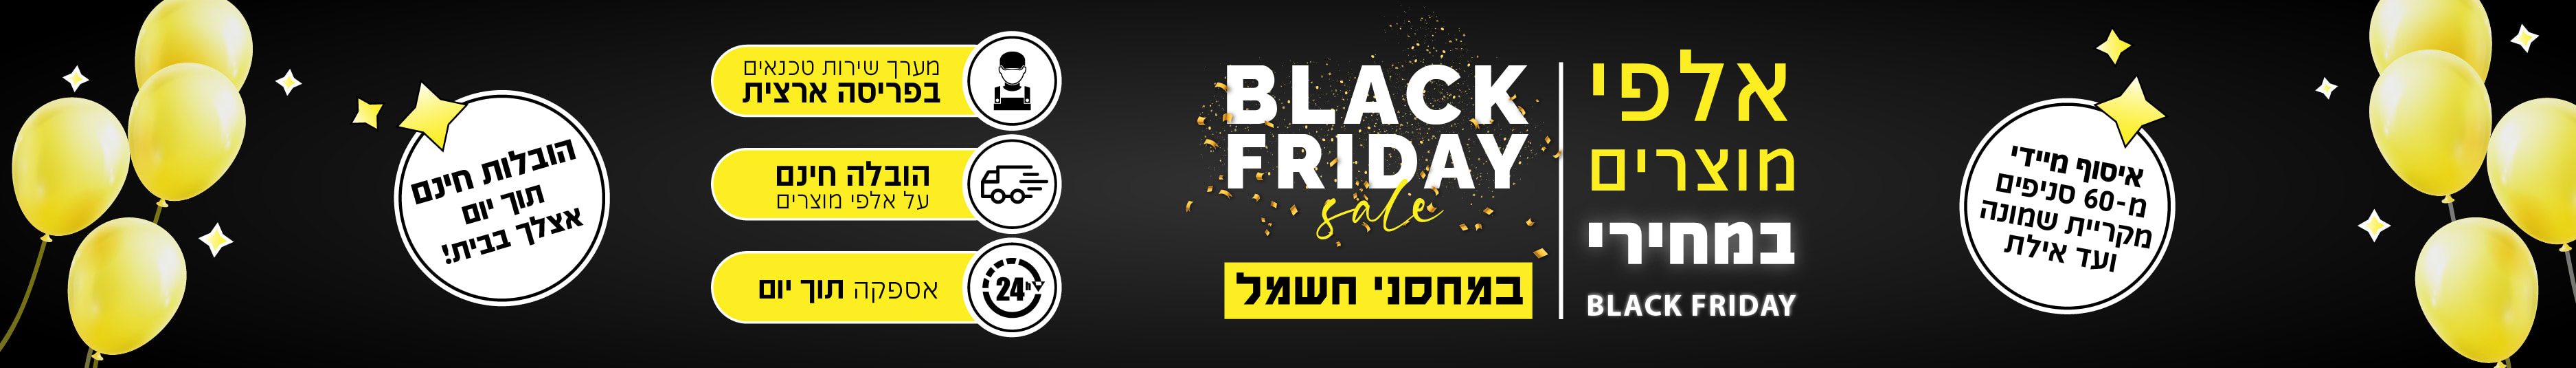 מקררים מקפיא עליון - מקררי אלקטרה המותג הנמכר ביותר בישראל באספקה תוך יום 